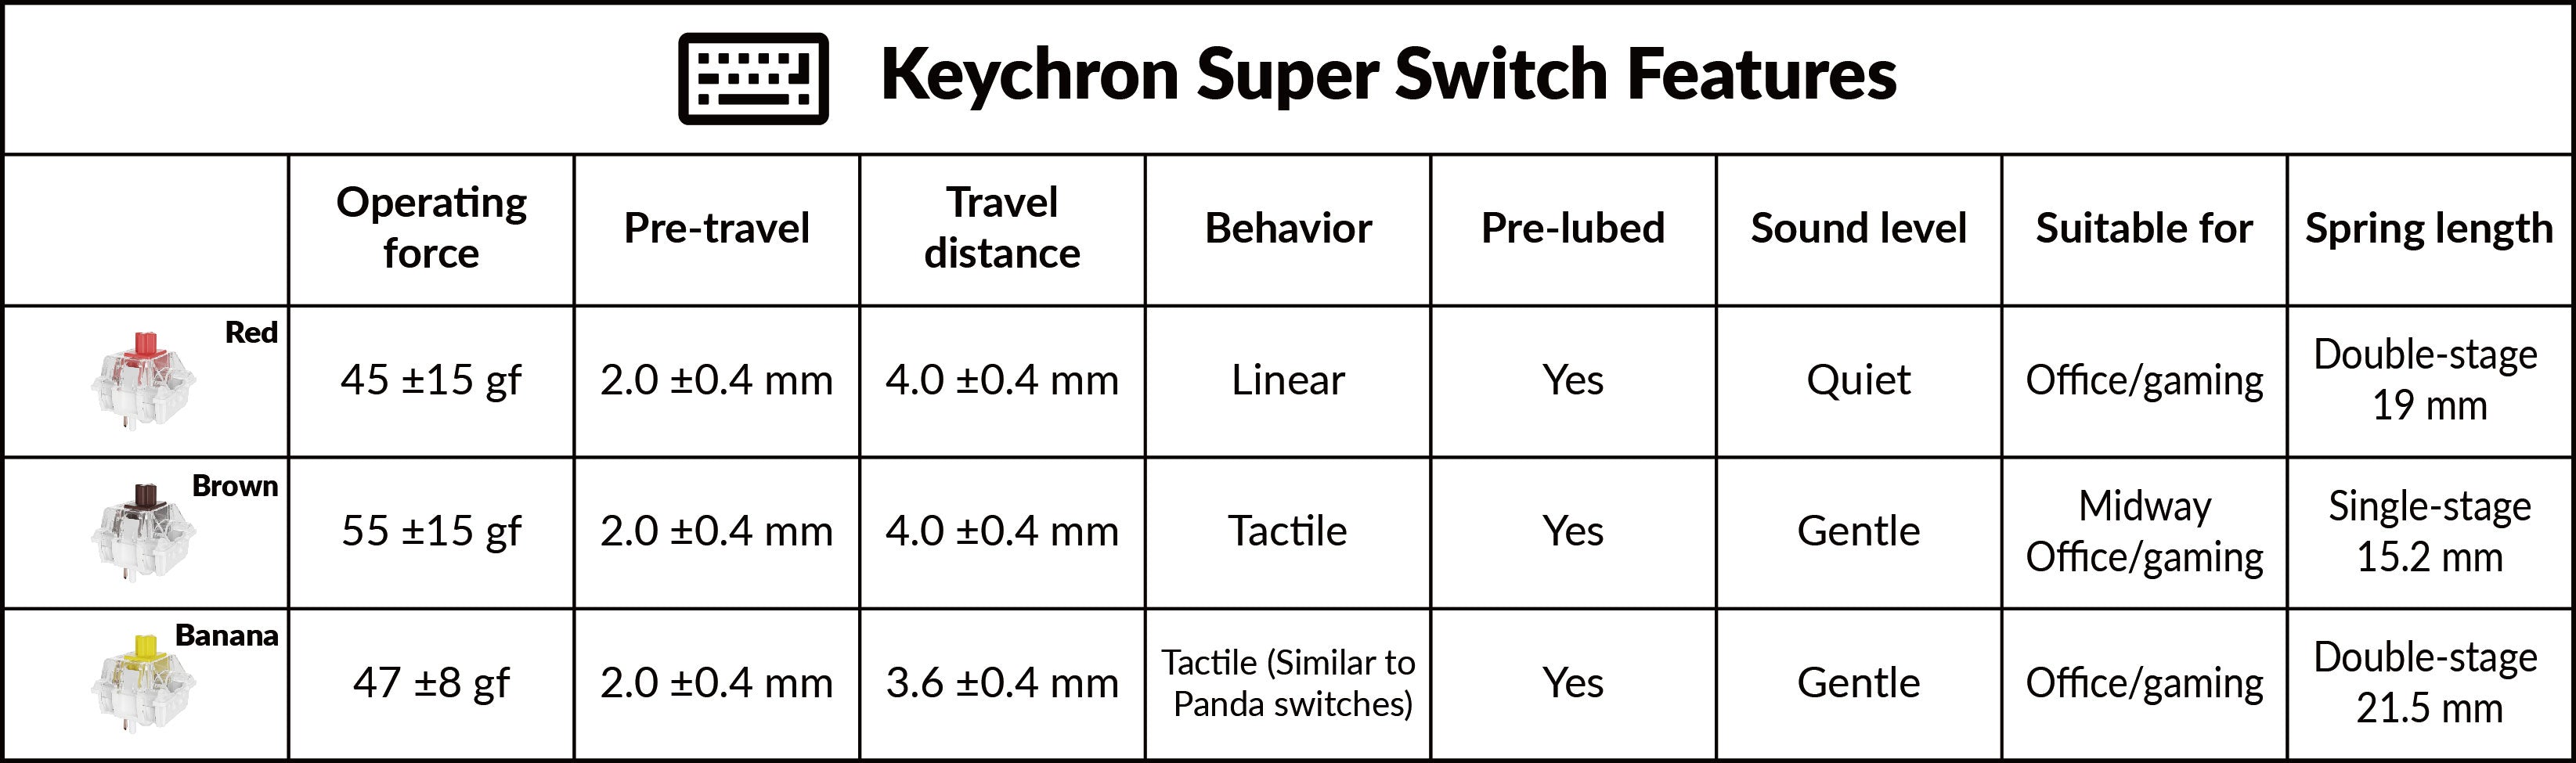 Keychron-Super-Switch-Features.jpg__PID:862f2f0f-9a81-4840-b029-93fab2966881